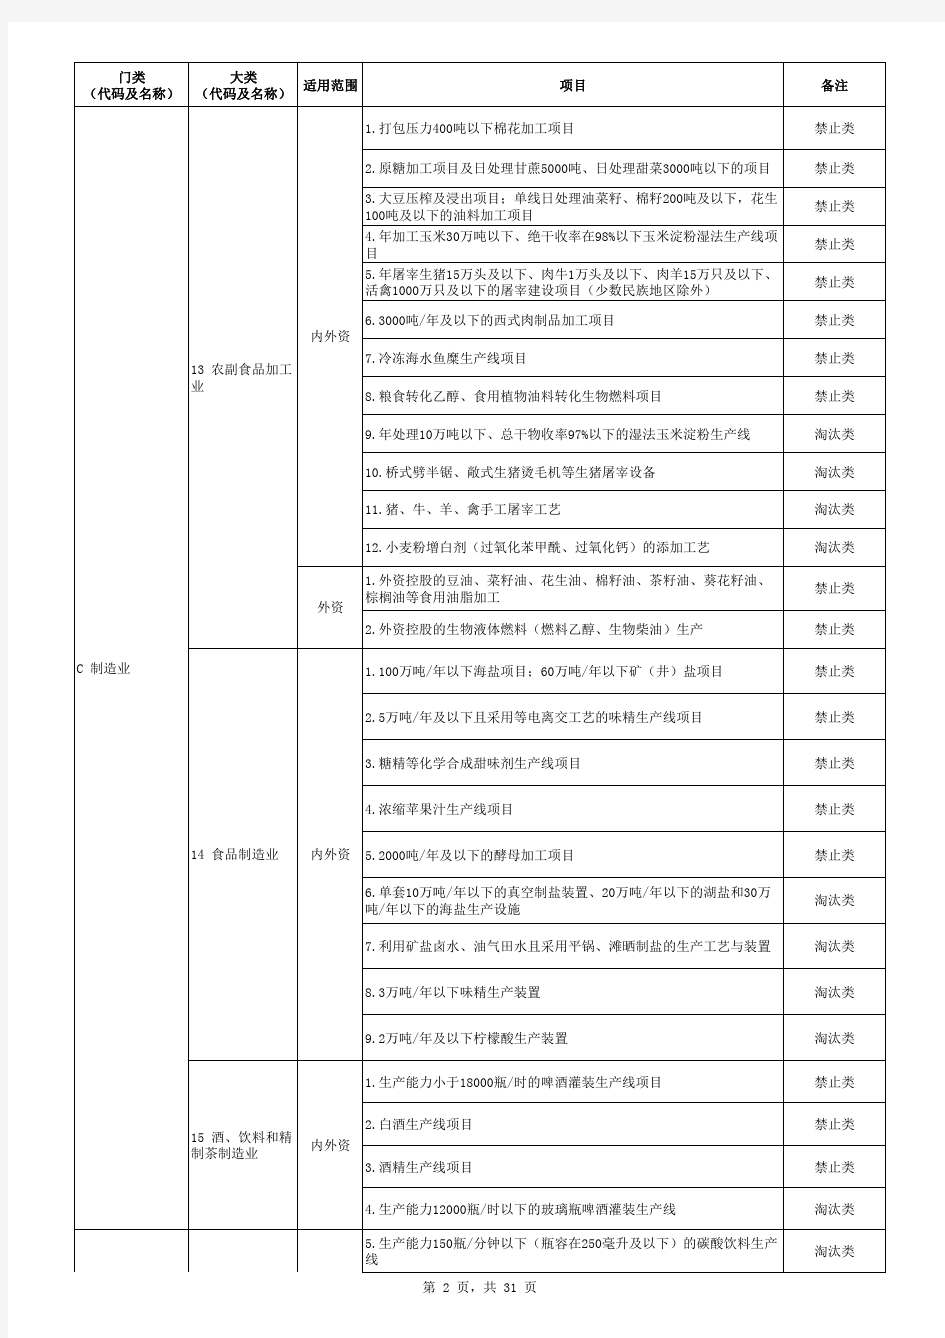 天津市禁止制投资项目清单(2015年版)